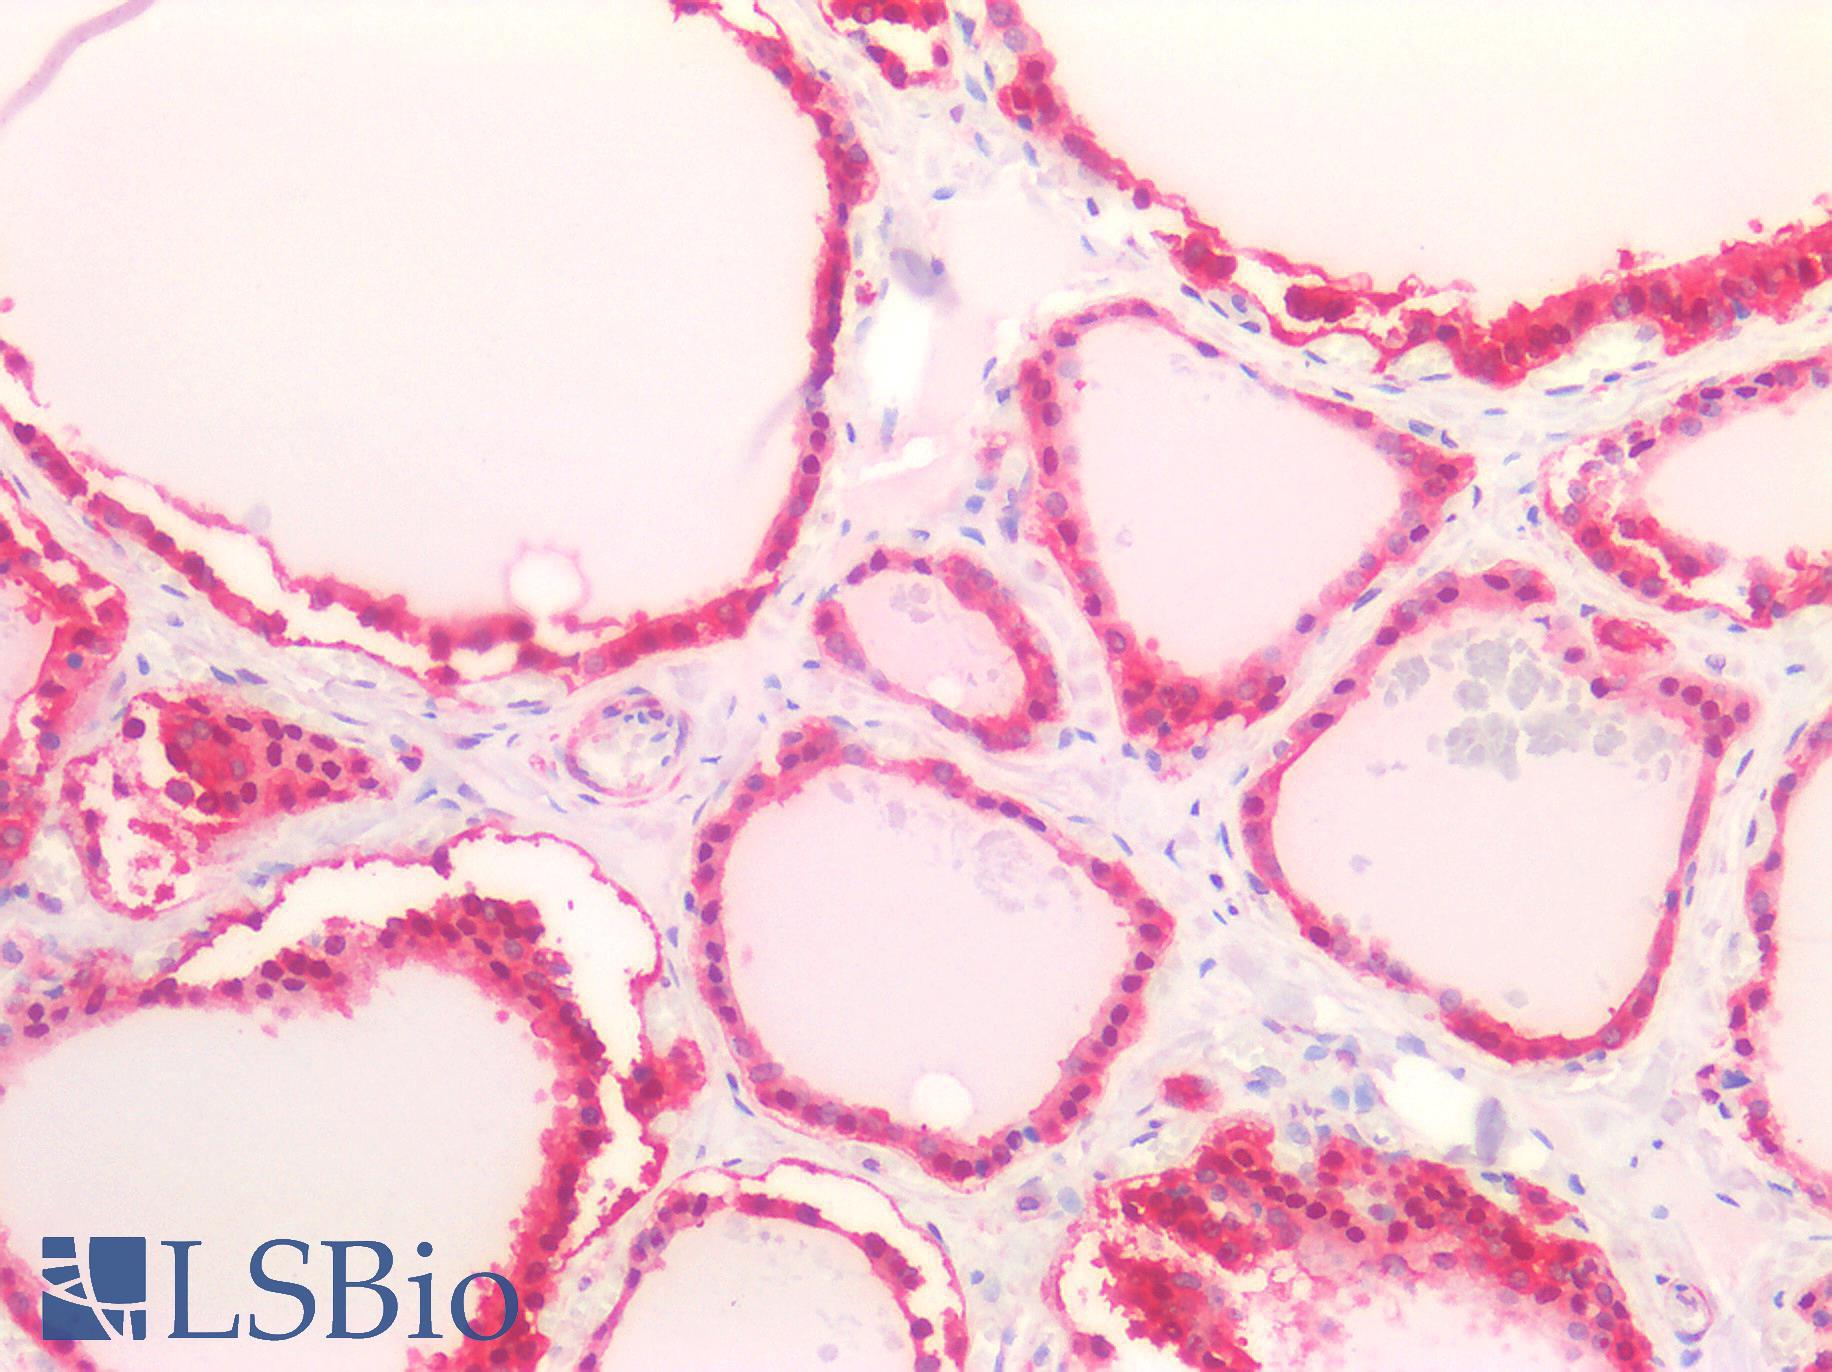 LDHB / Lactate Dehydrogenase B Antibody - Human Thyroid: Formalin-Fixed, Paraffin-Embedded (FFPE)